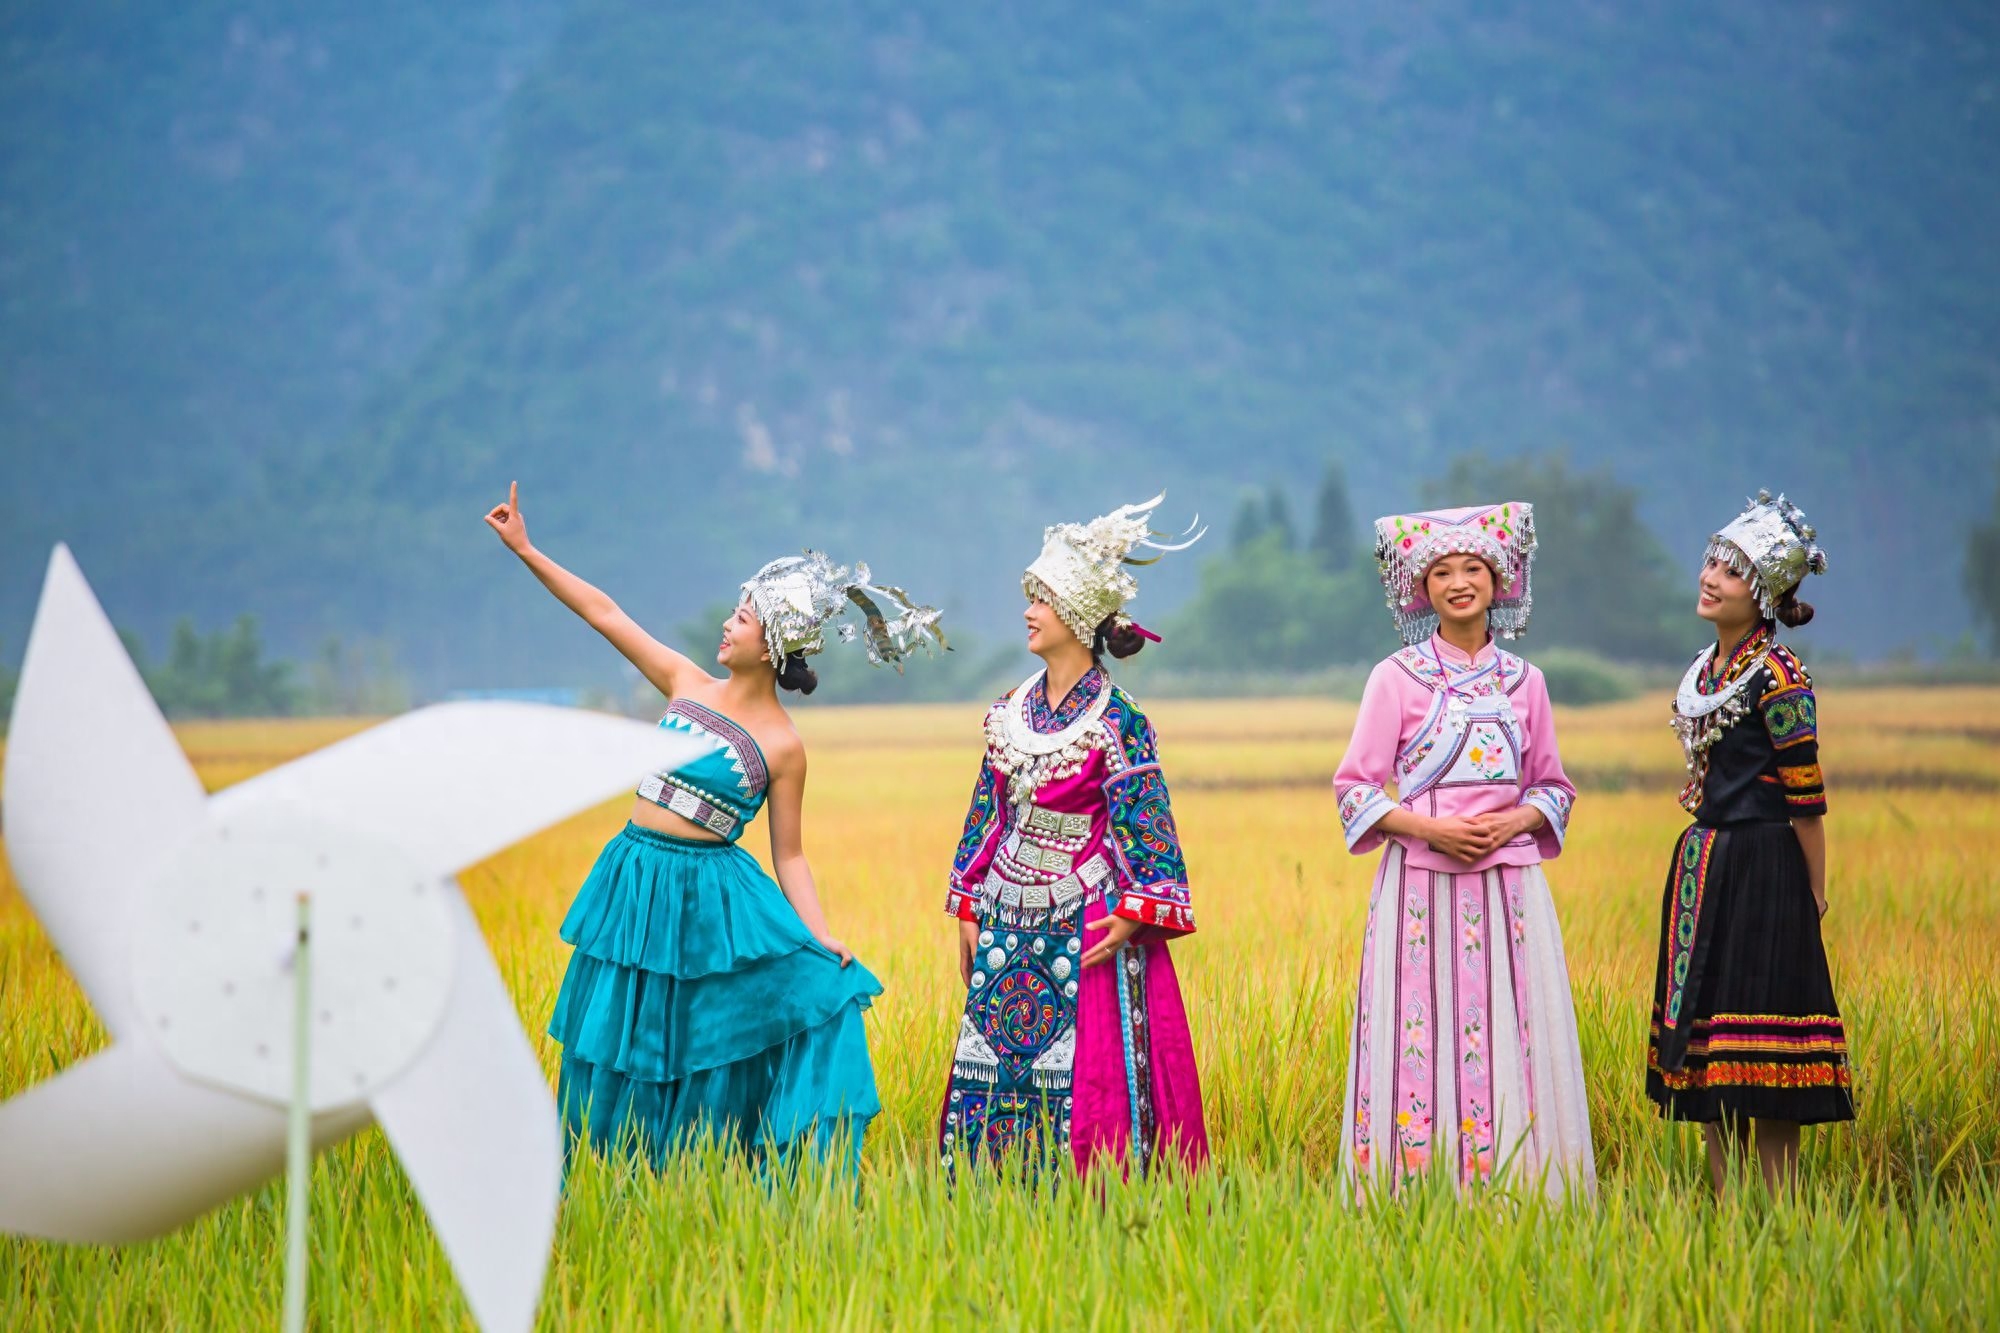 贵州安顺镇宁布依族六月六，热情、好客，这是传统的布依族文化精髓